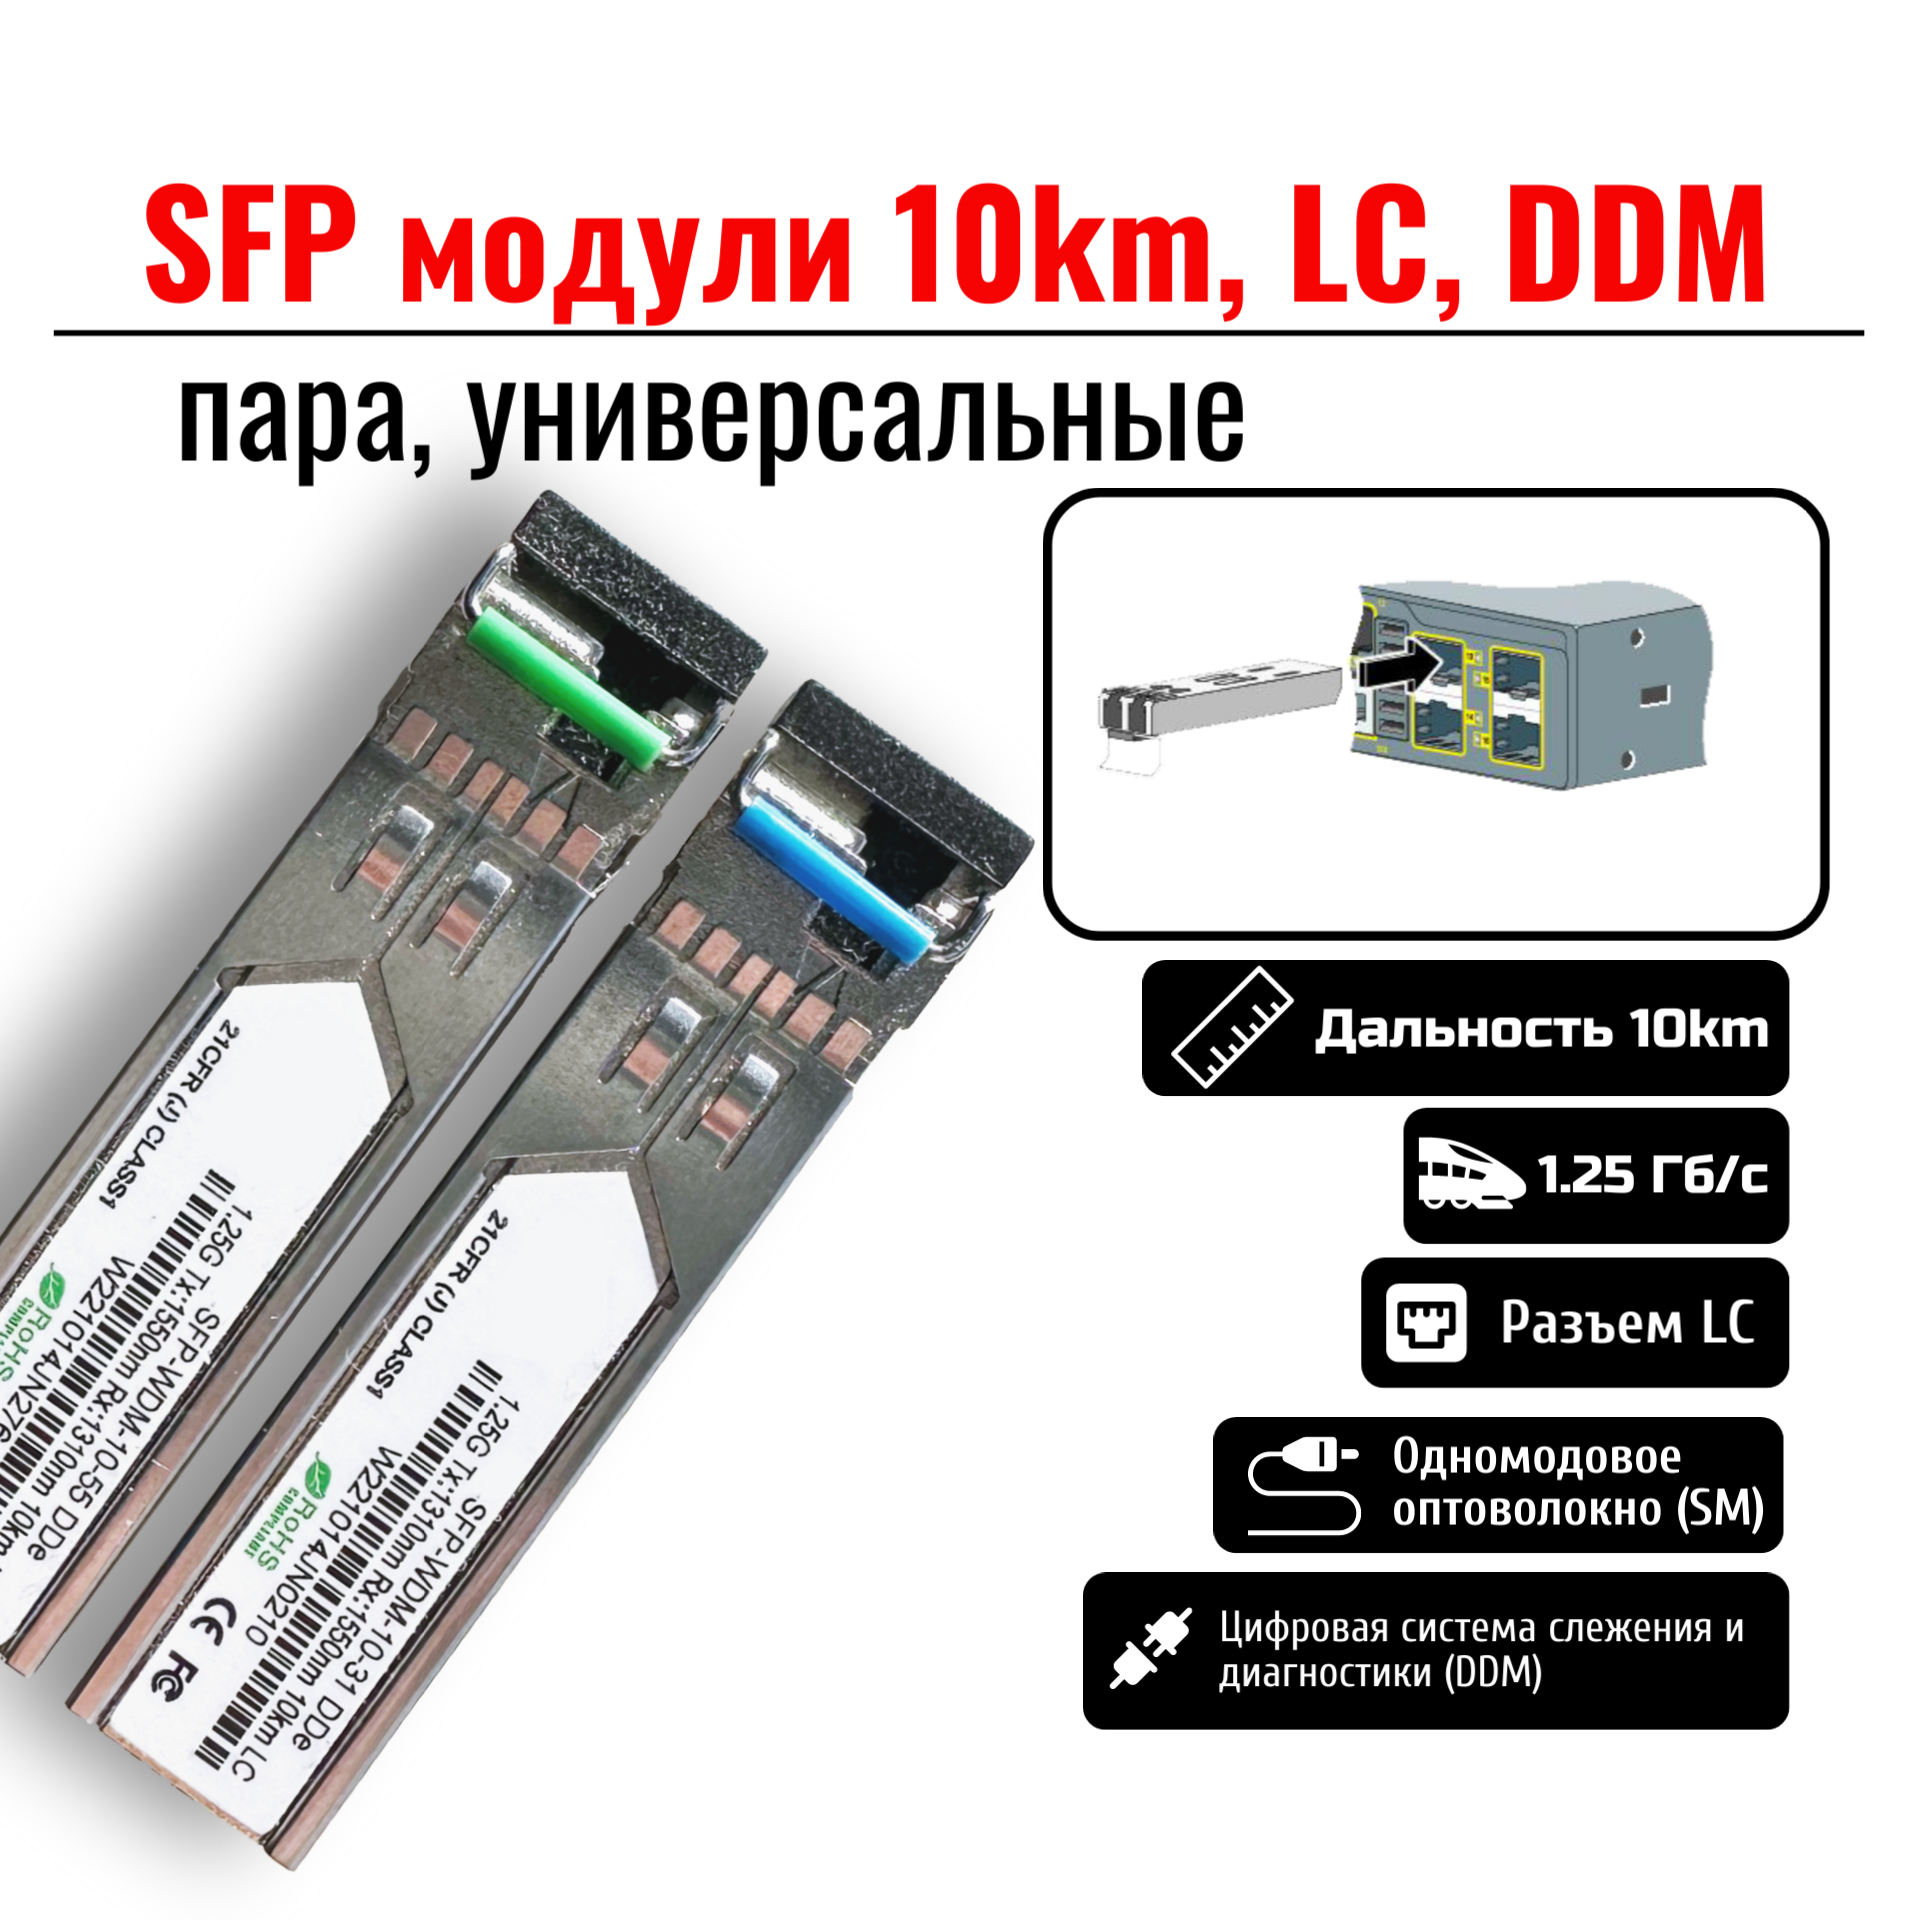 SFP модули WDM 10км LC DDM пара универсальные